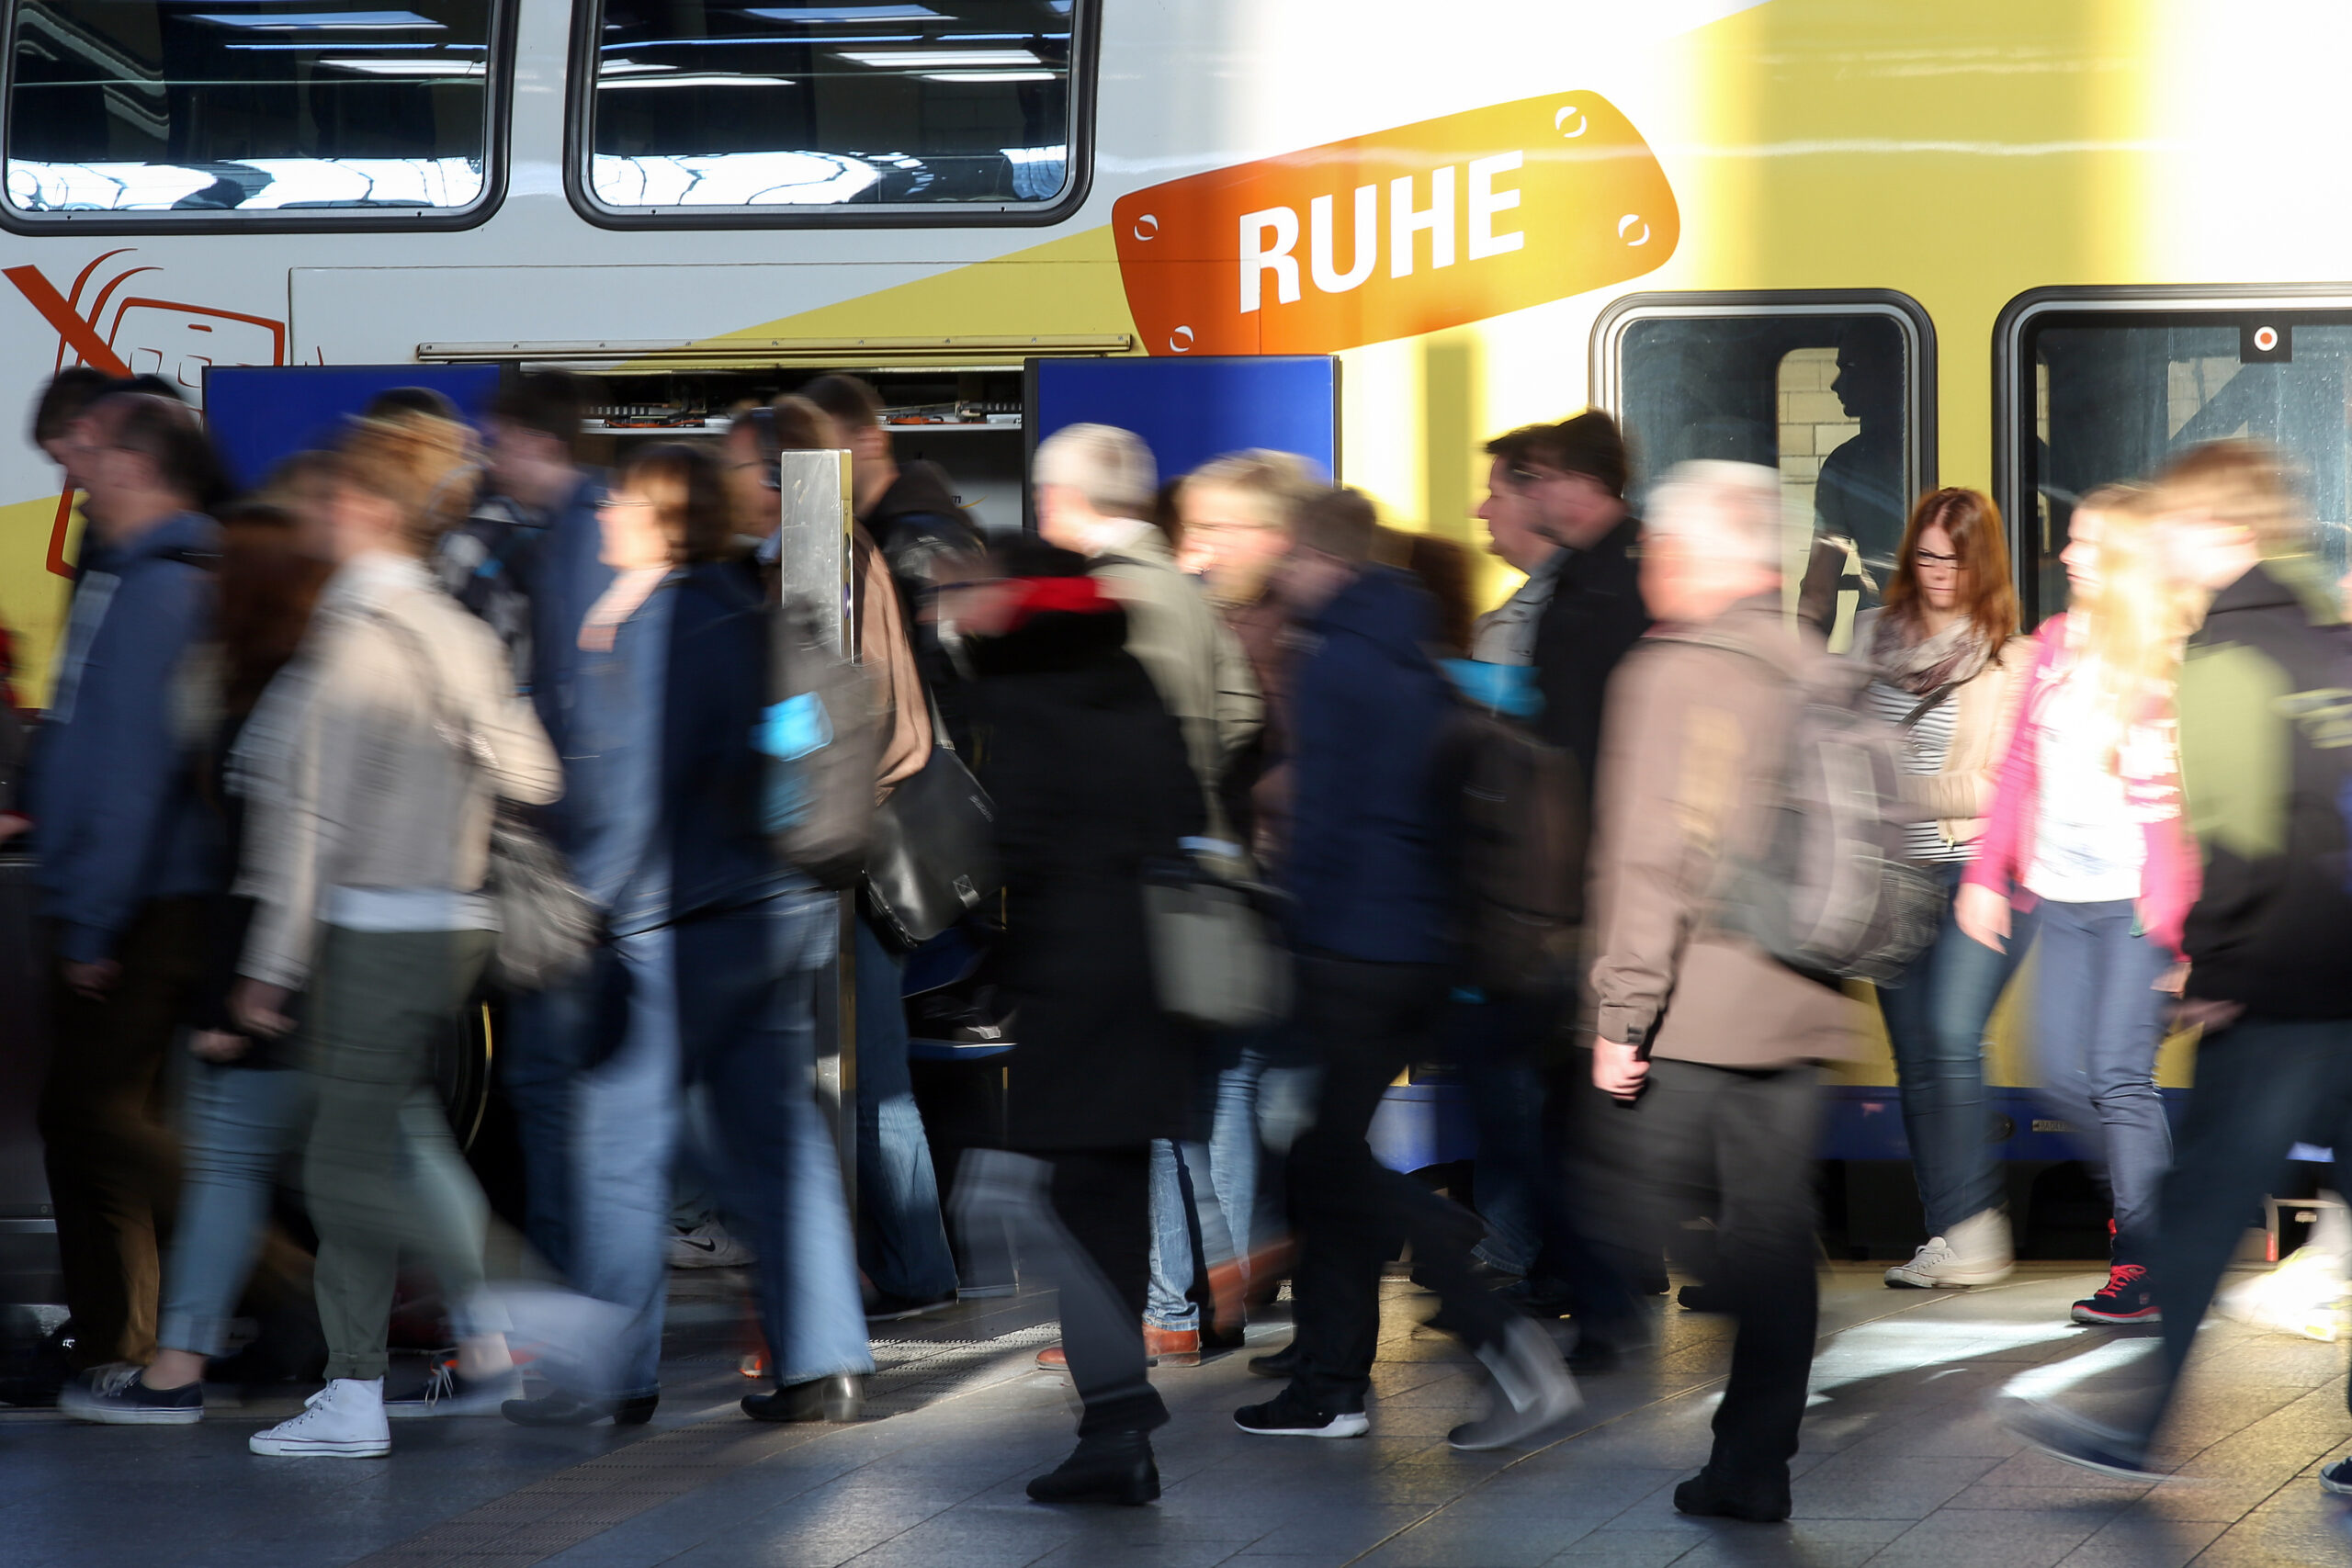 Reisende und Pendler laufen auf einem Bahnsteig an einem stehenden Metronom-Zug vorbei.